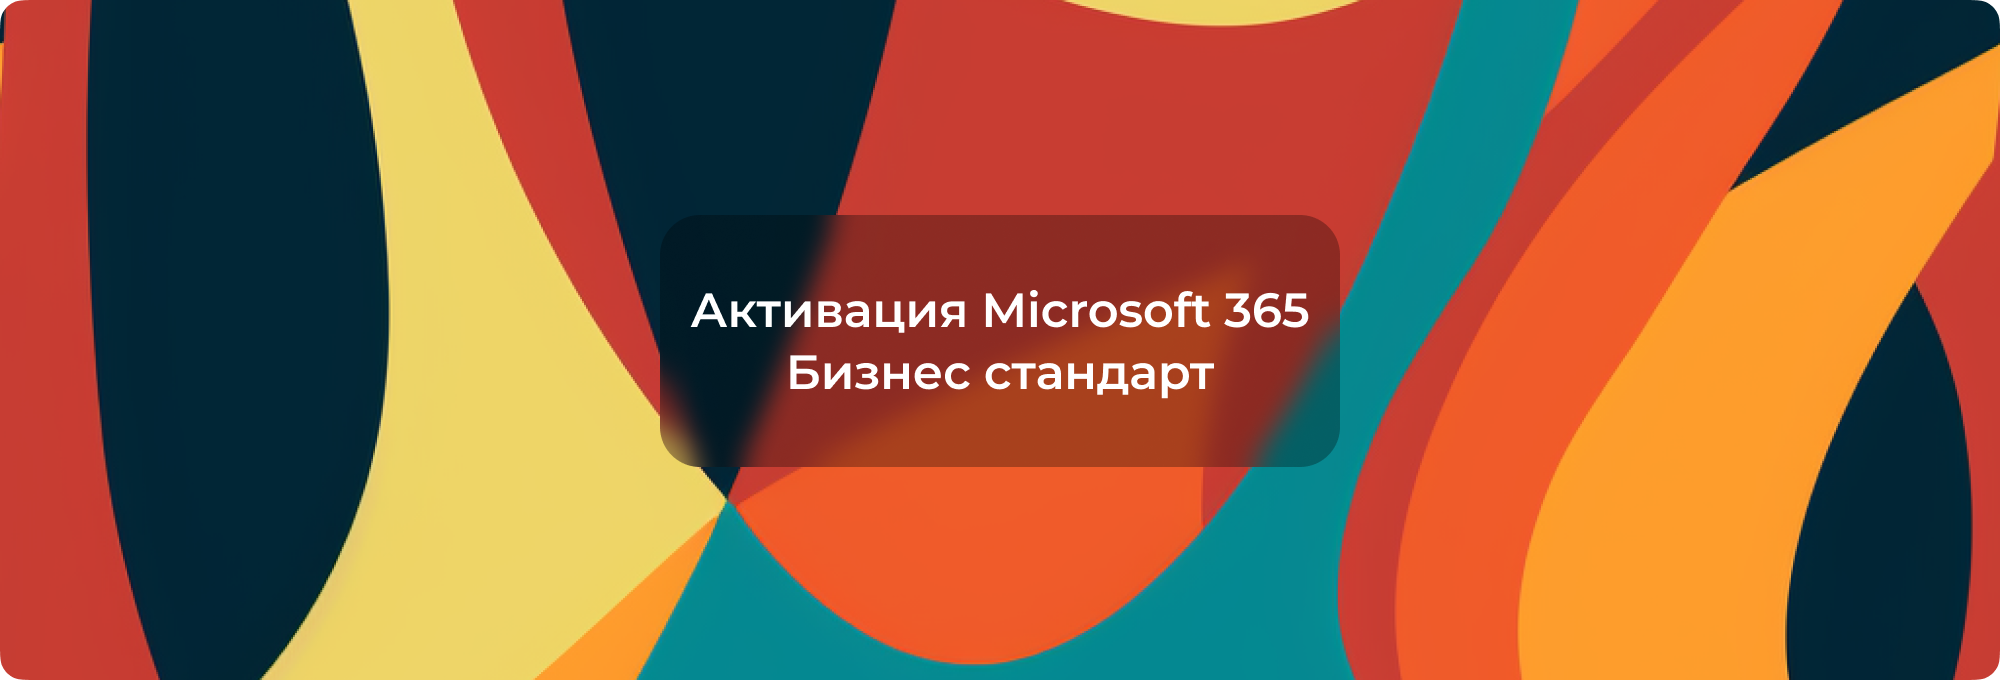 Активация Microsoft 365 Бизнес стандарт